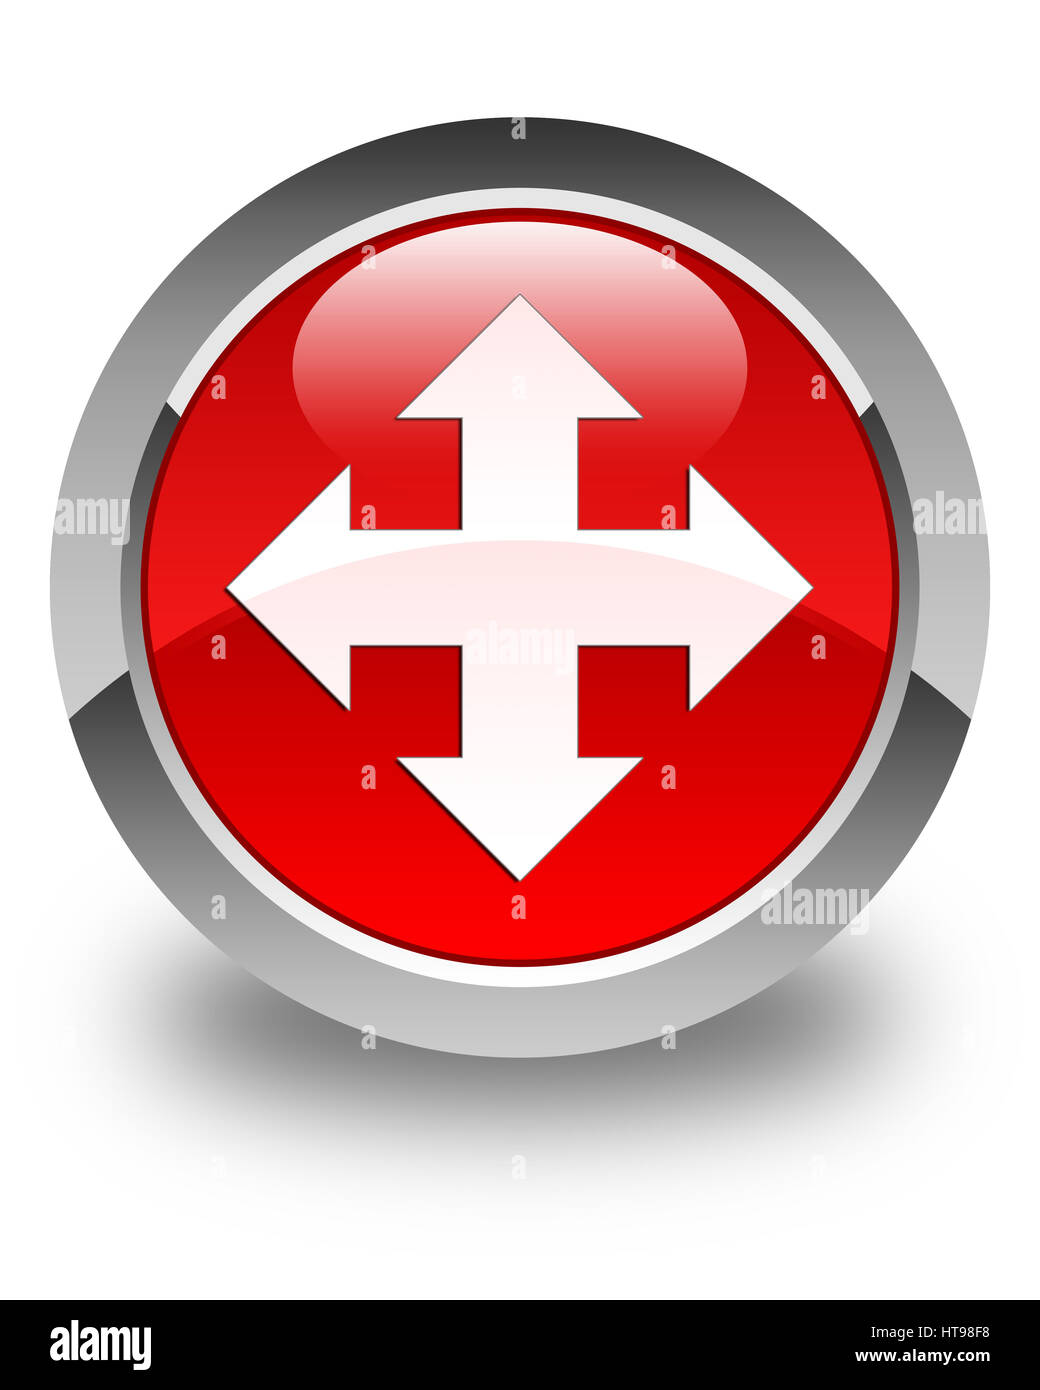 L'icône Déplacer isolé sur le bouton rond rouge brillant abstract illustration Banque D'Images